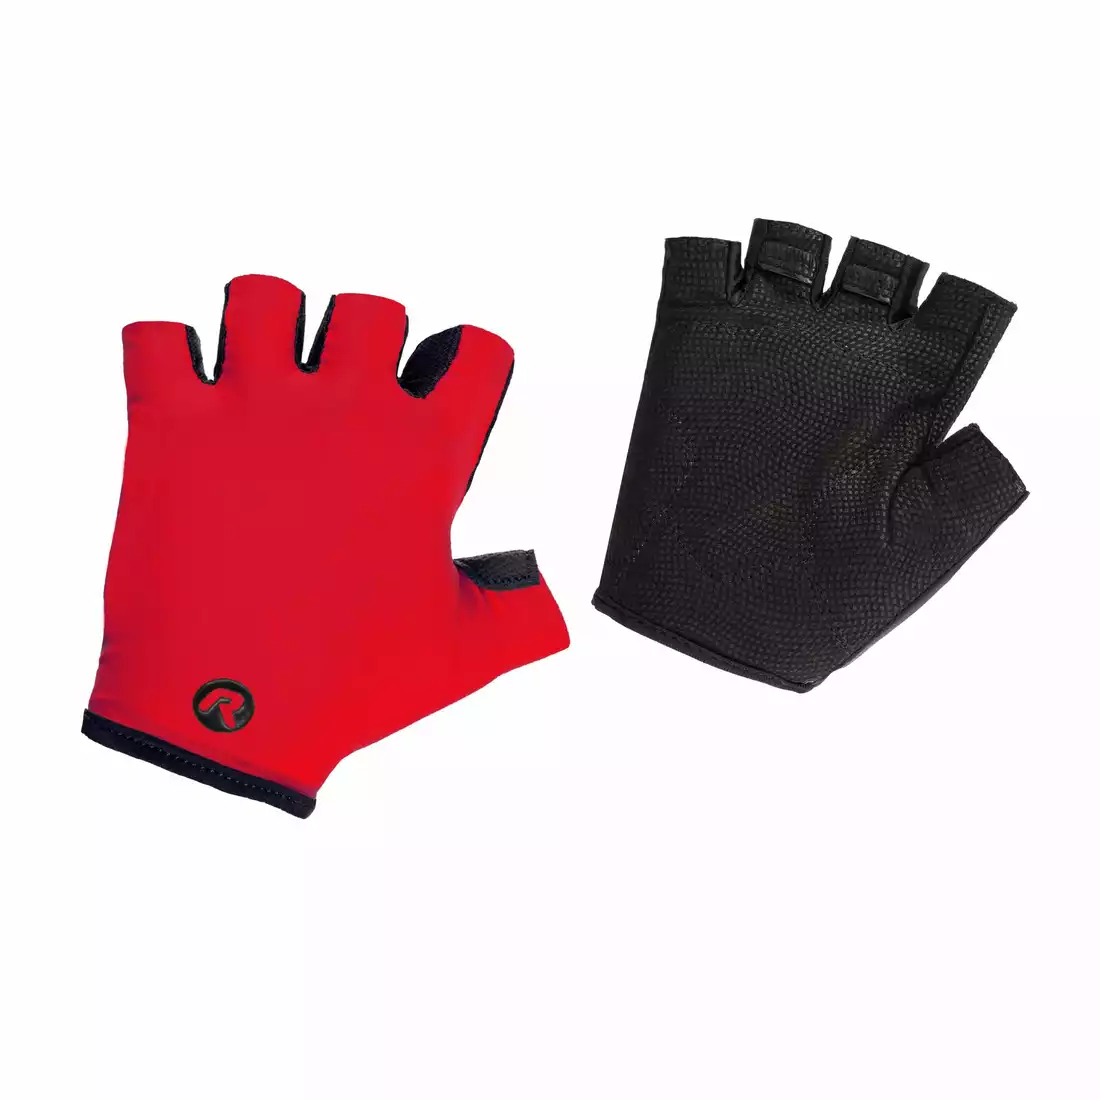 Red and Black Fingerless Gloves